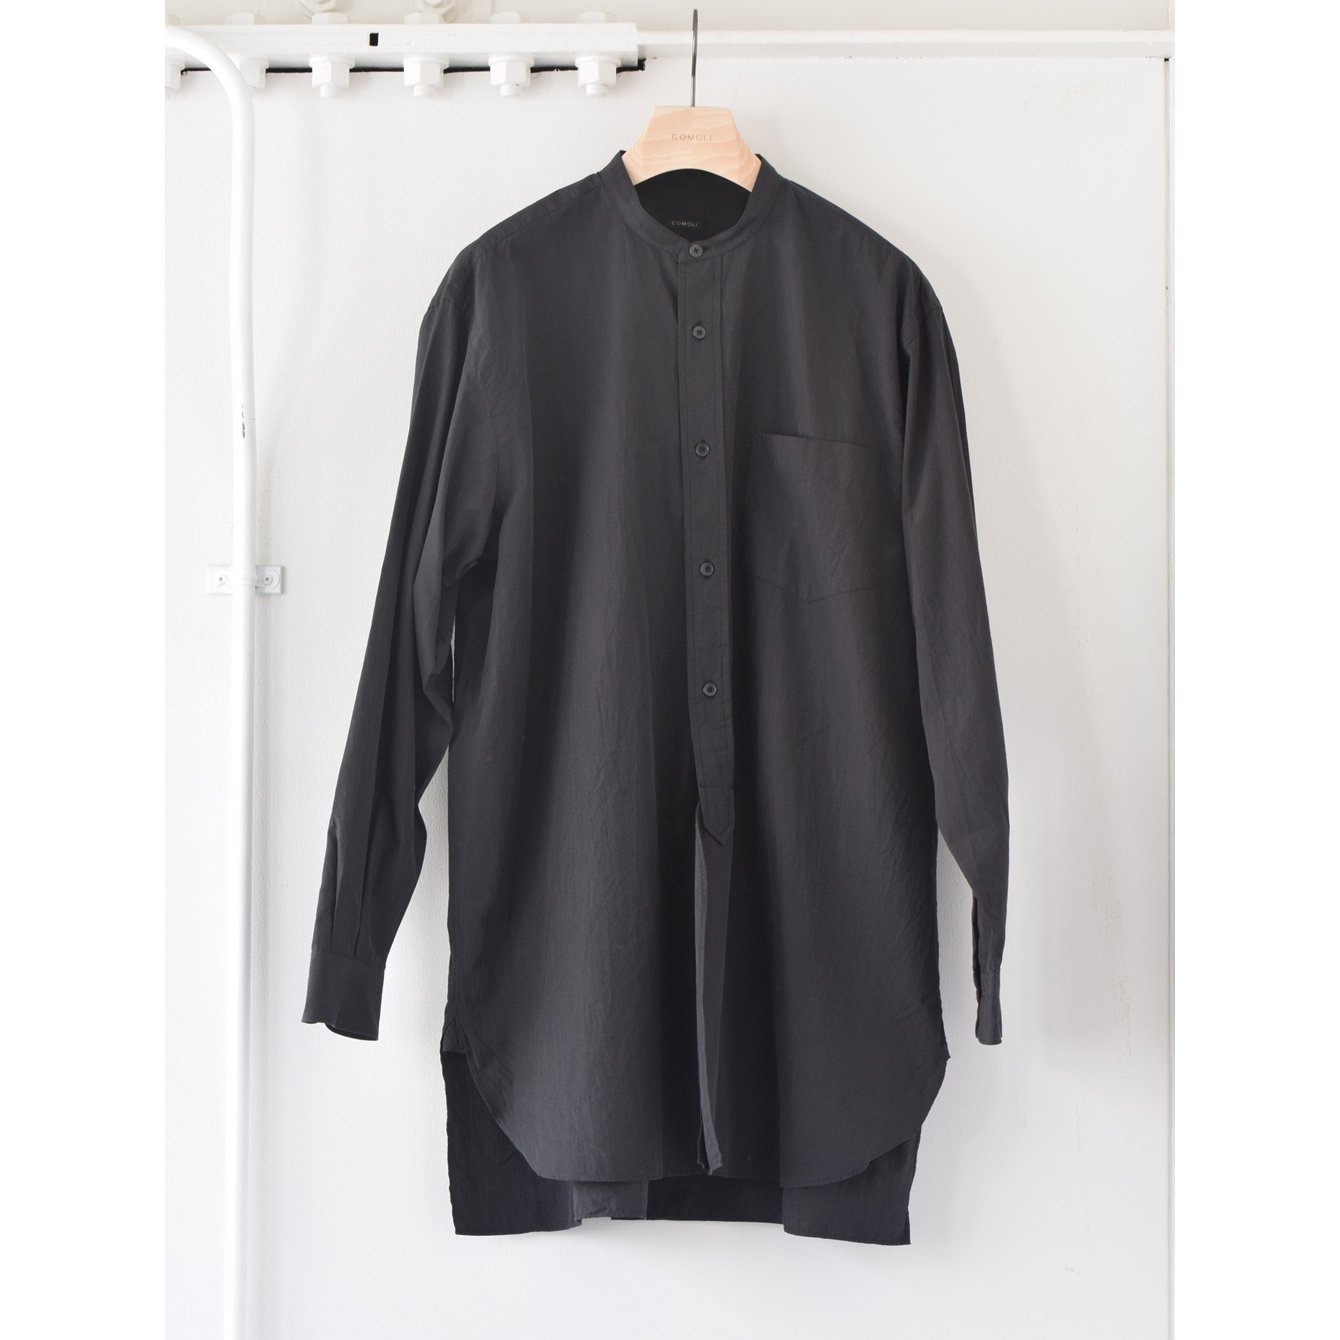 9,600円希少 サイズ2 19awコモリシャツ COMOLI バンドカラー  黒タグ